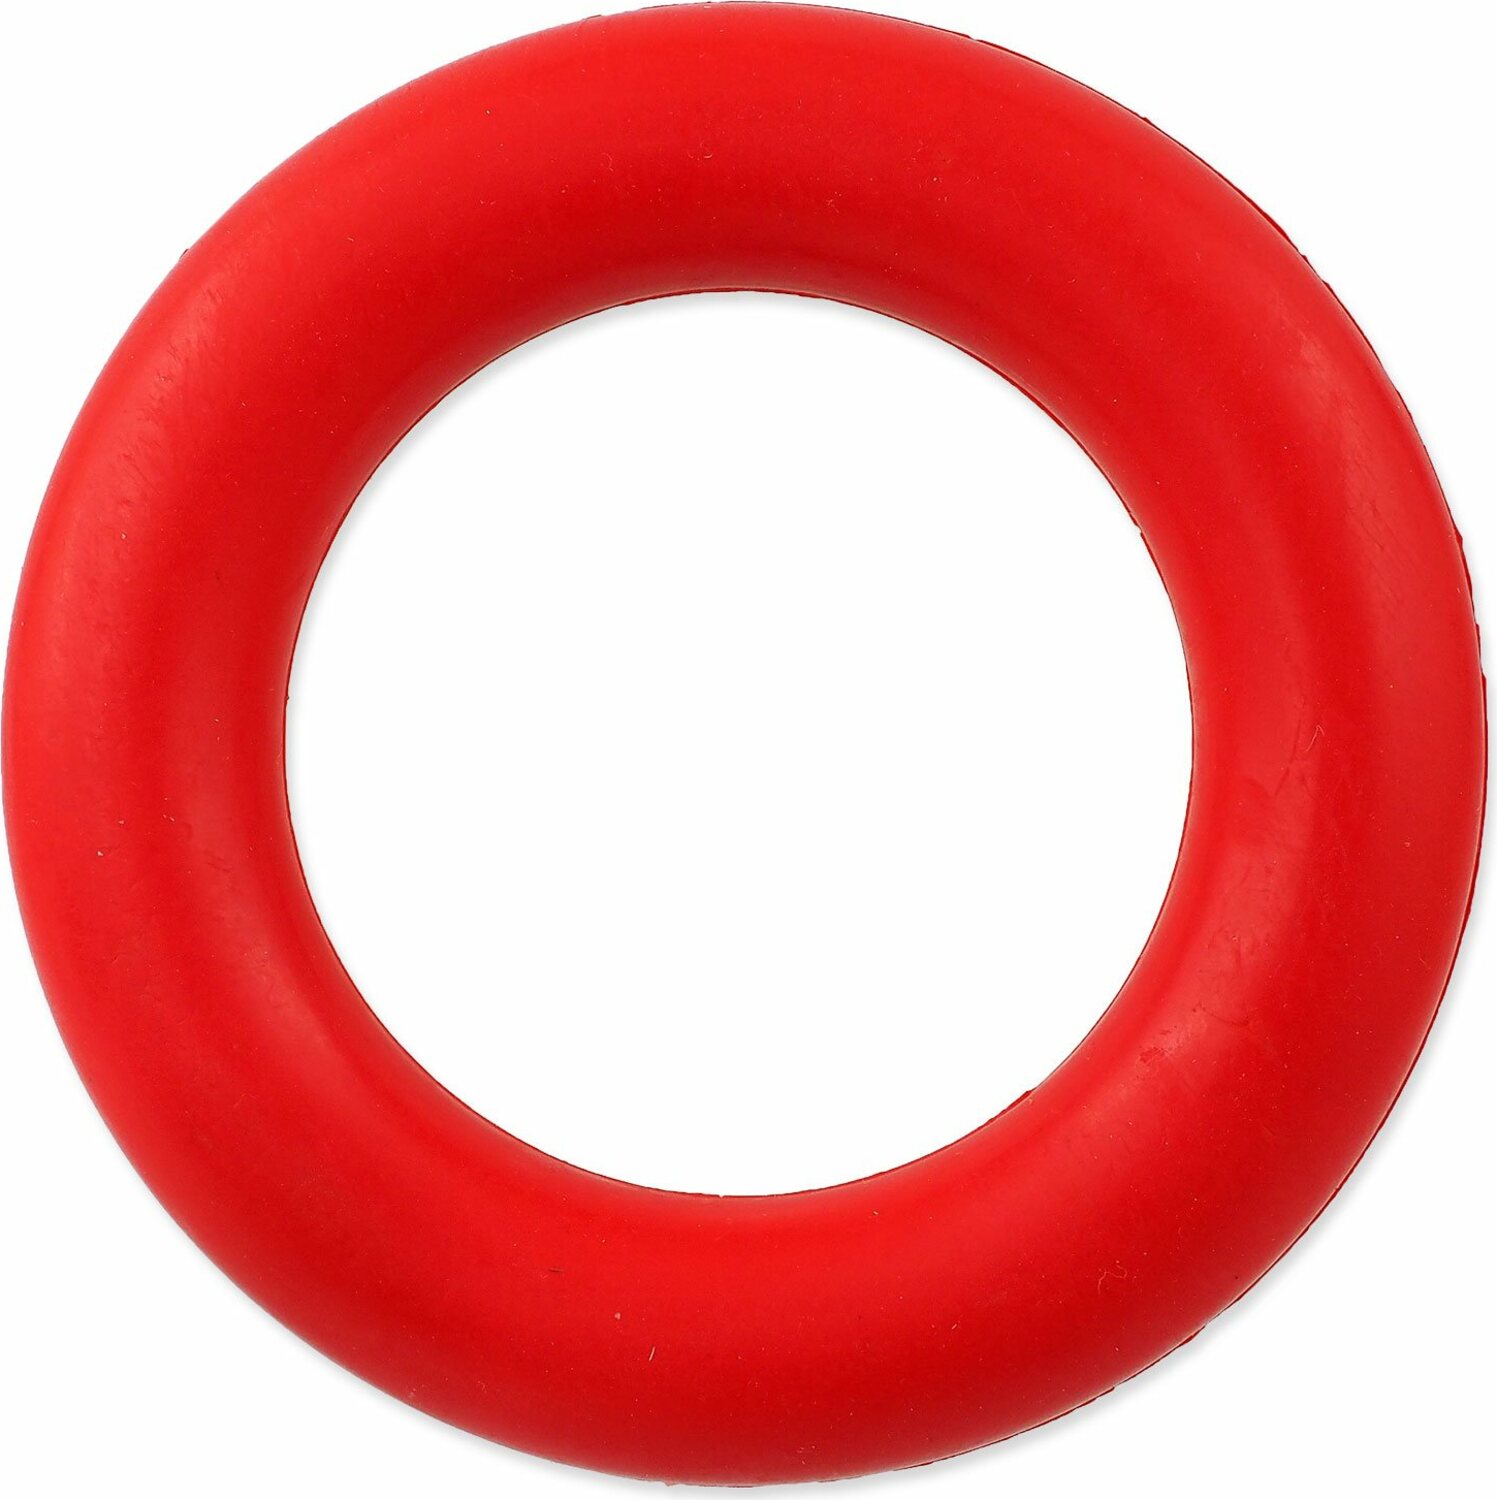 Hračka Dog Fantasy kruh červený 16,5cm